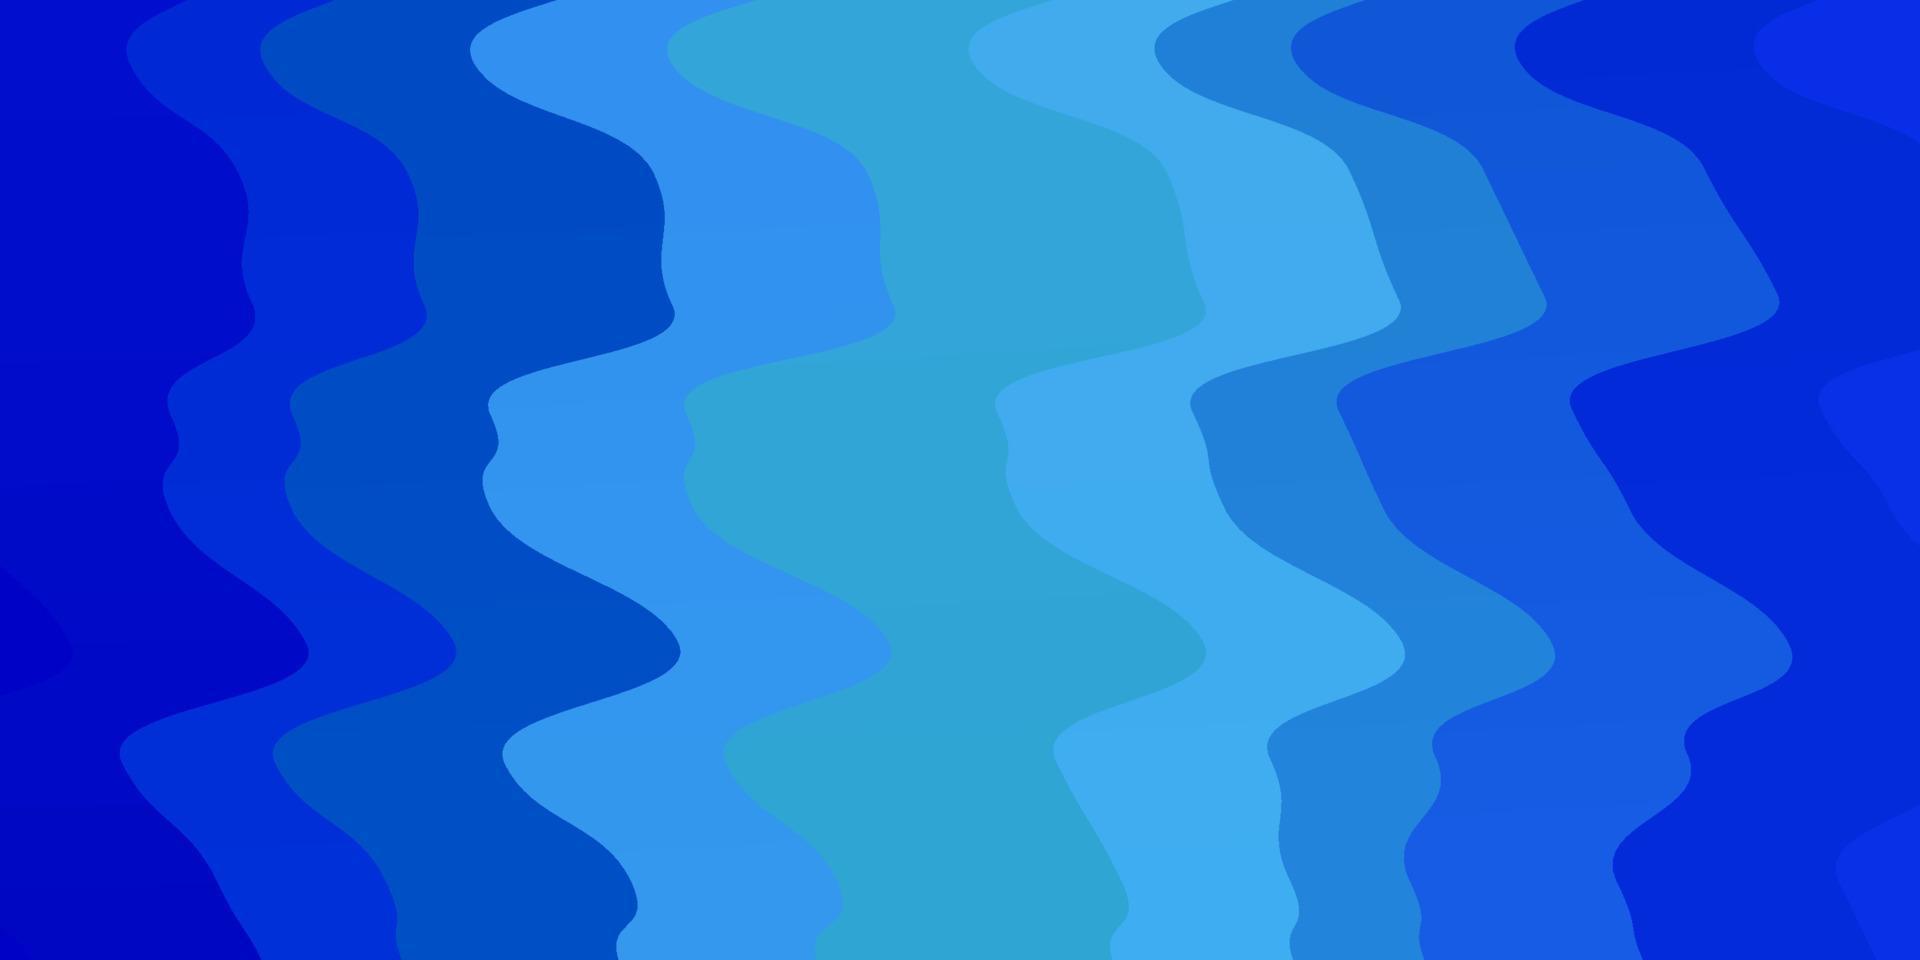 Light BLUE vector backdrop with circular arc.